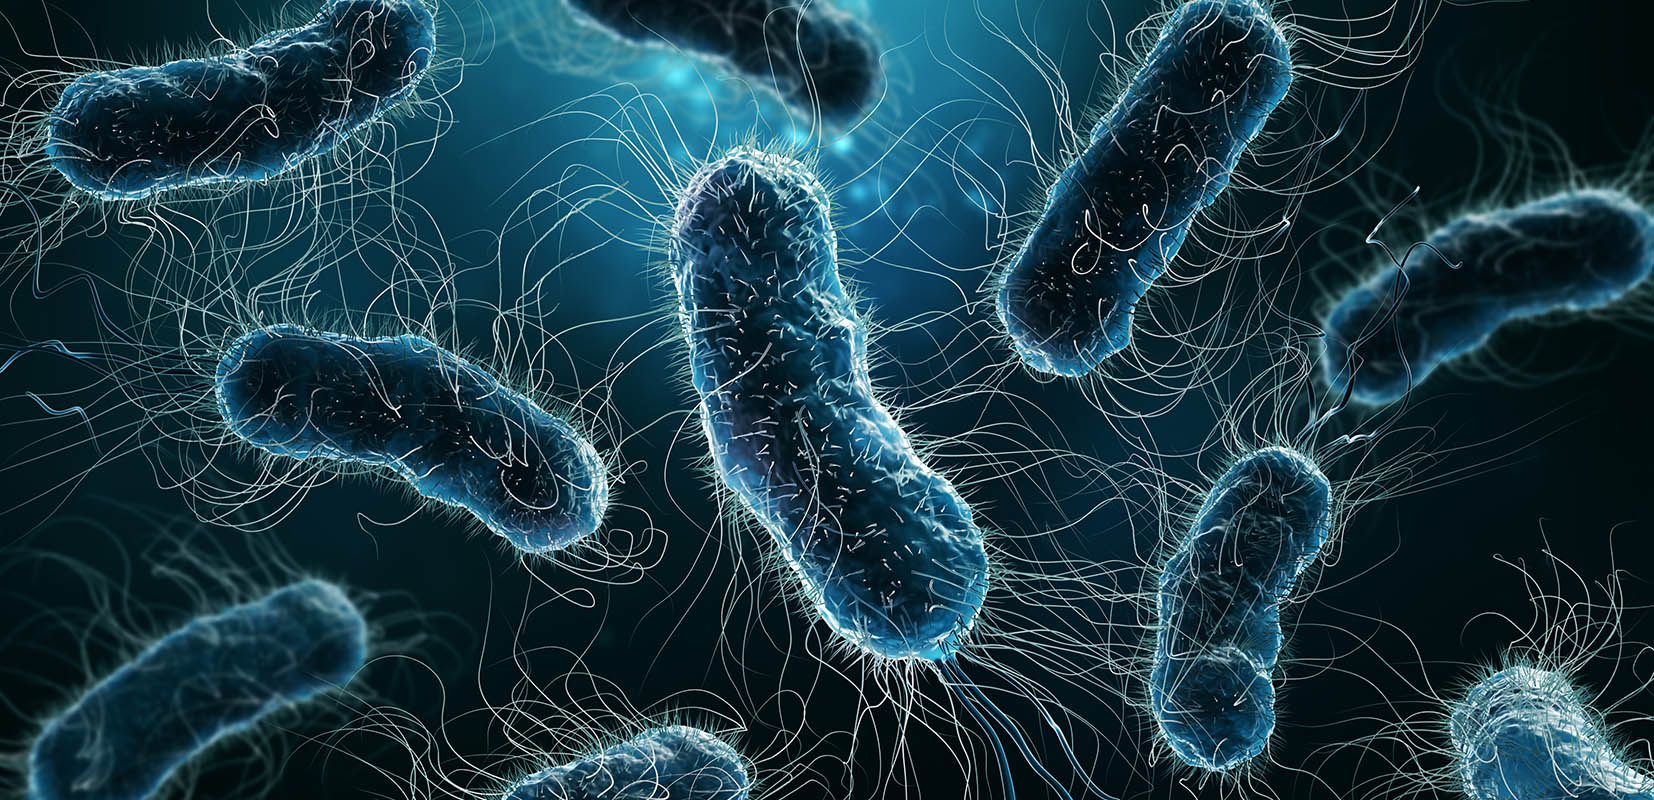 Ilustracion en 3D de una infección por superbacterias